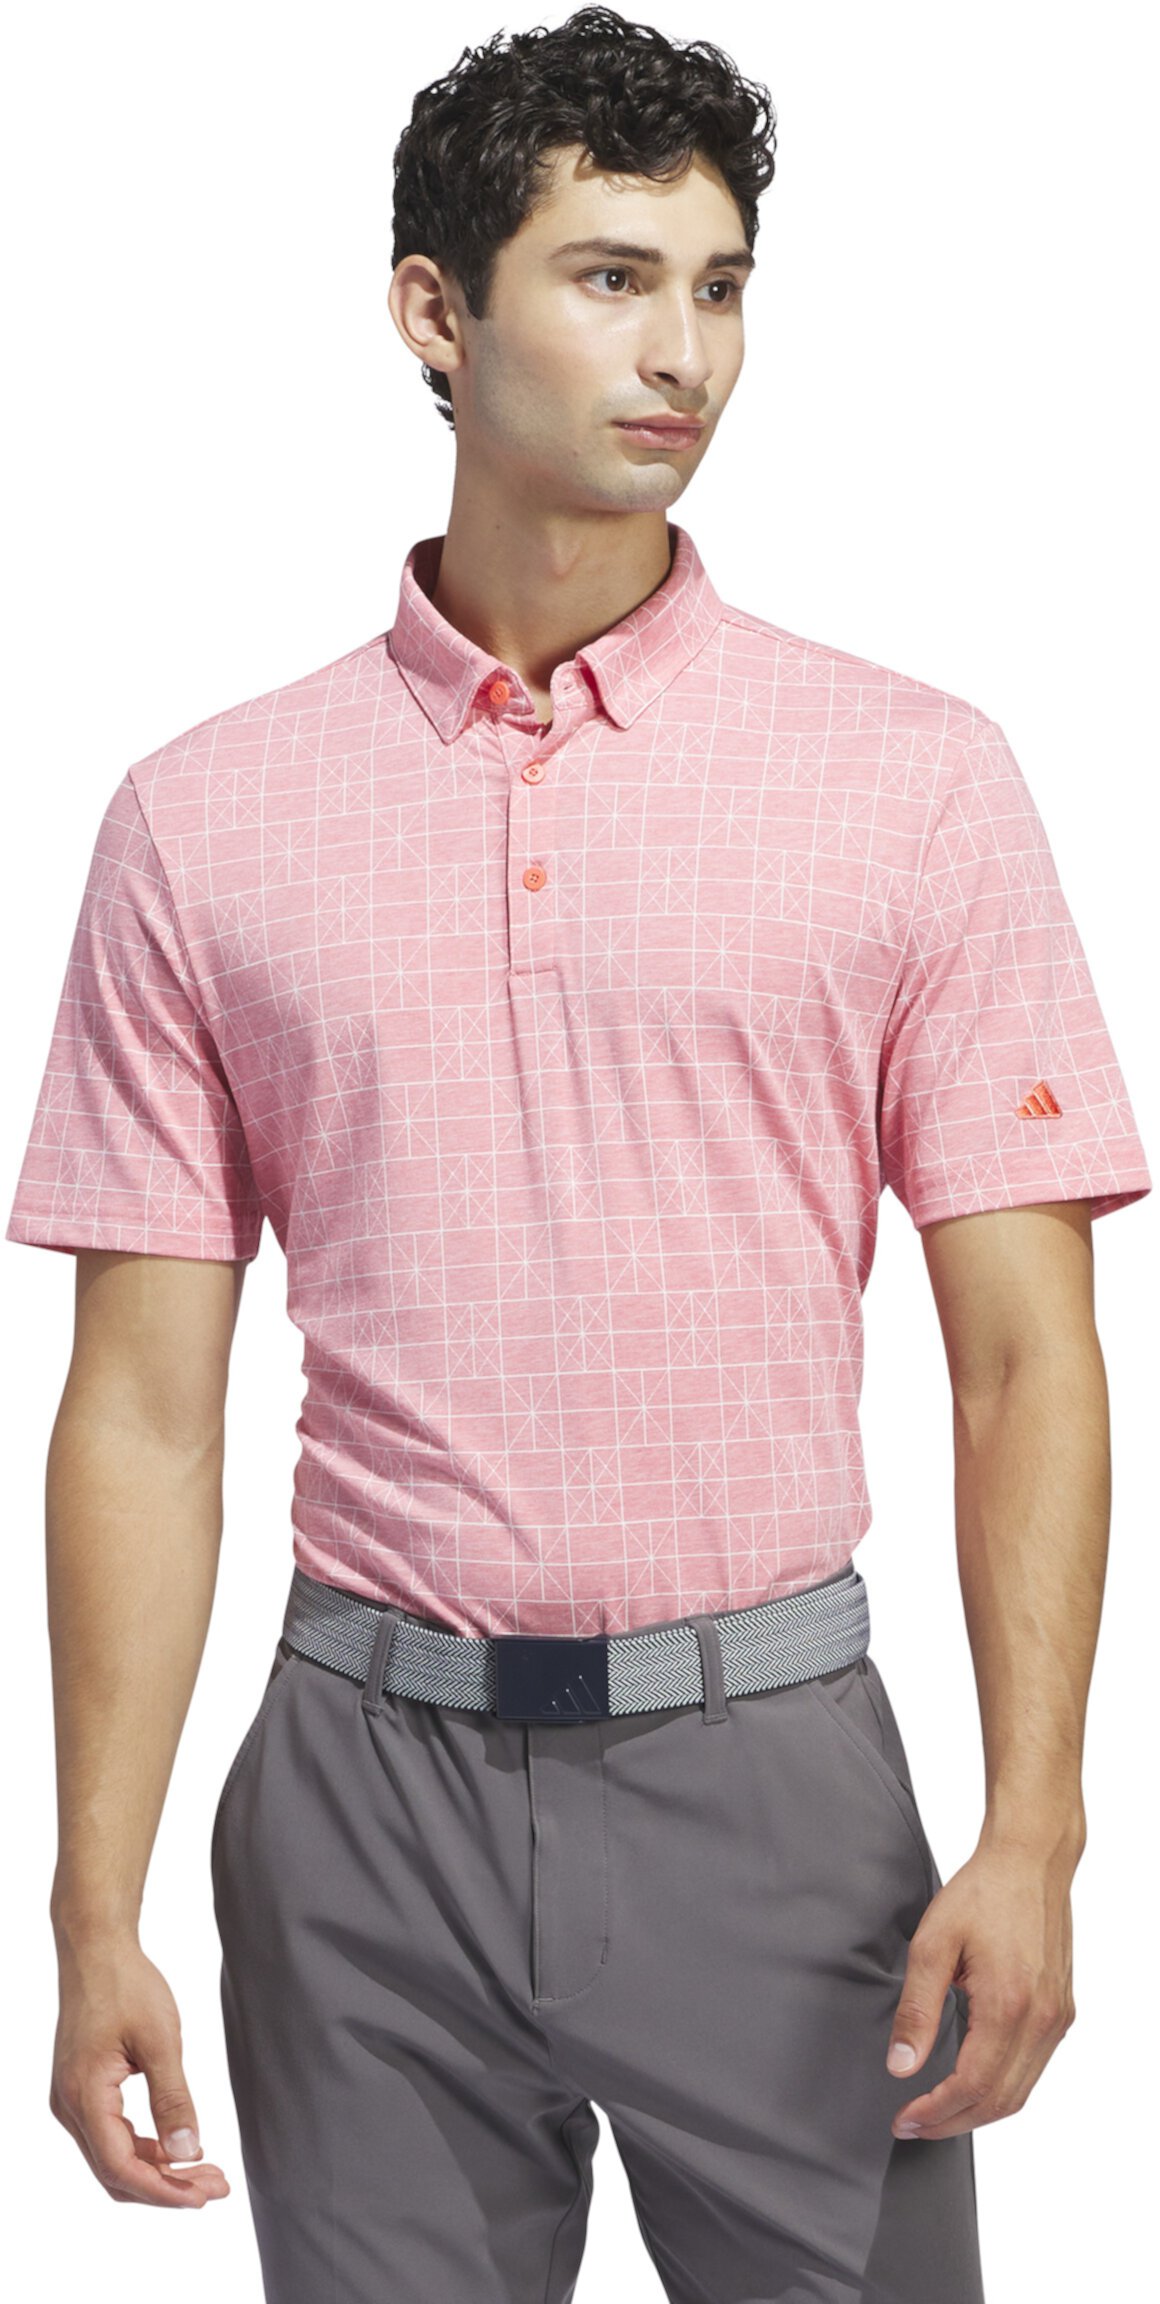 Мужская футболка-поло Adidas Golf Adidas